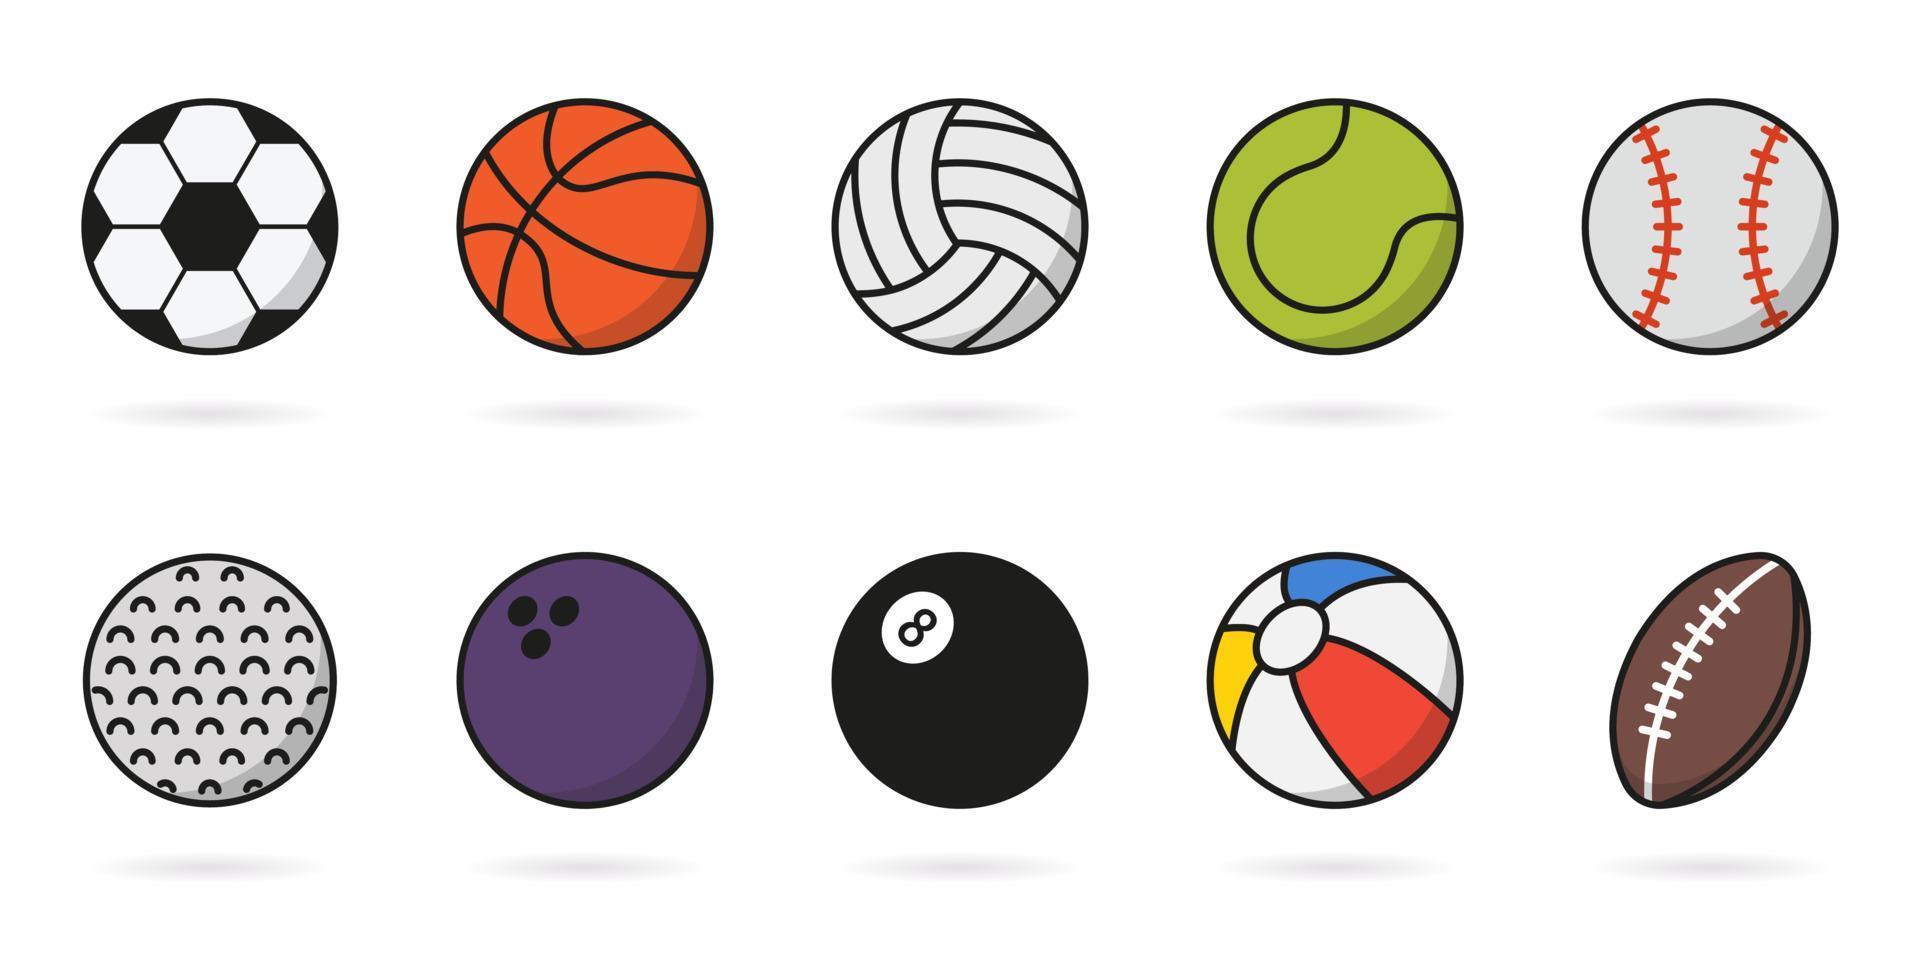 satz von sportspielbällen symbol. sammlung von bällen für basketball, baseball, tennis, rugby, fußball, volleyball, golf, pool, bowling-piktogramm. aufblasbarer Ball, Softball-Symbol. Vektor-Illustration. vektor